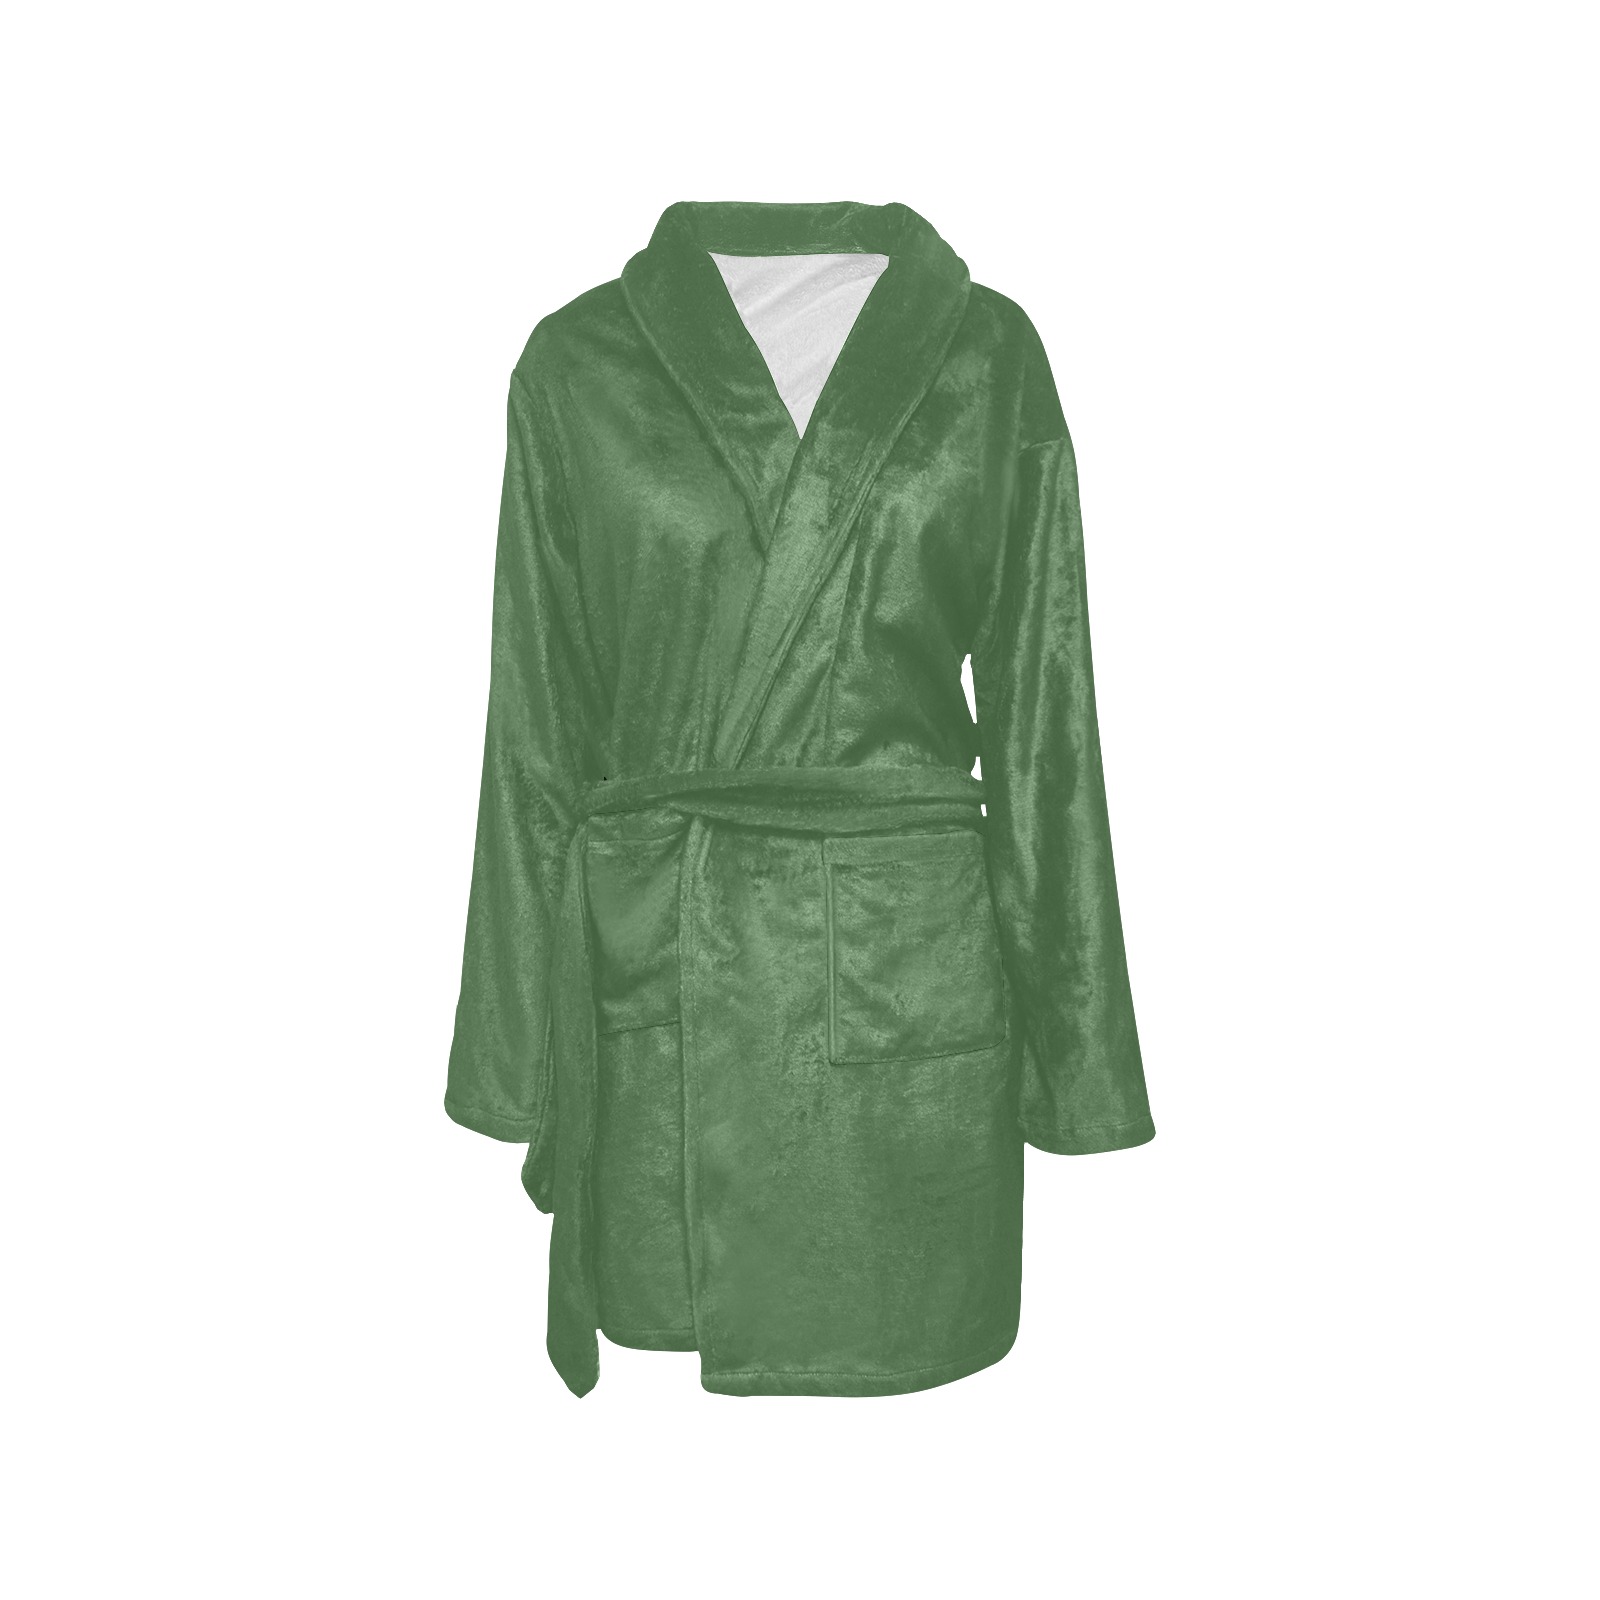 color artichoke green Women's All Over Print Night Robe